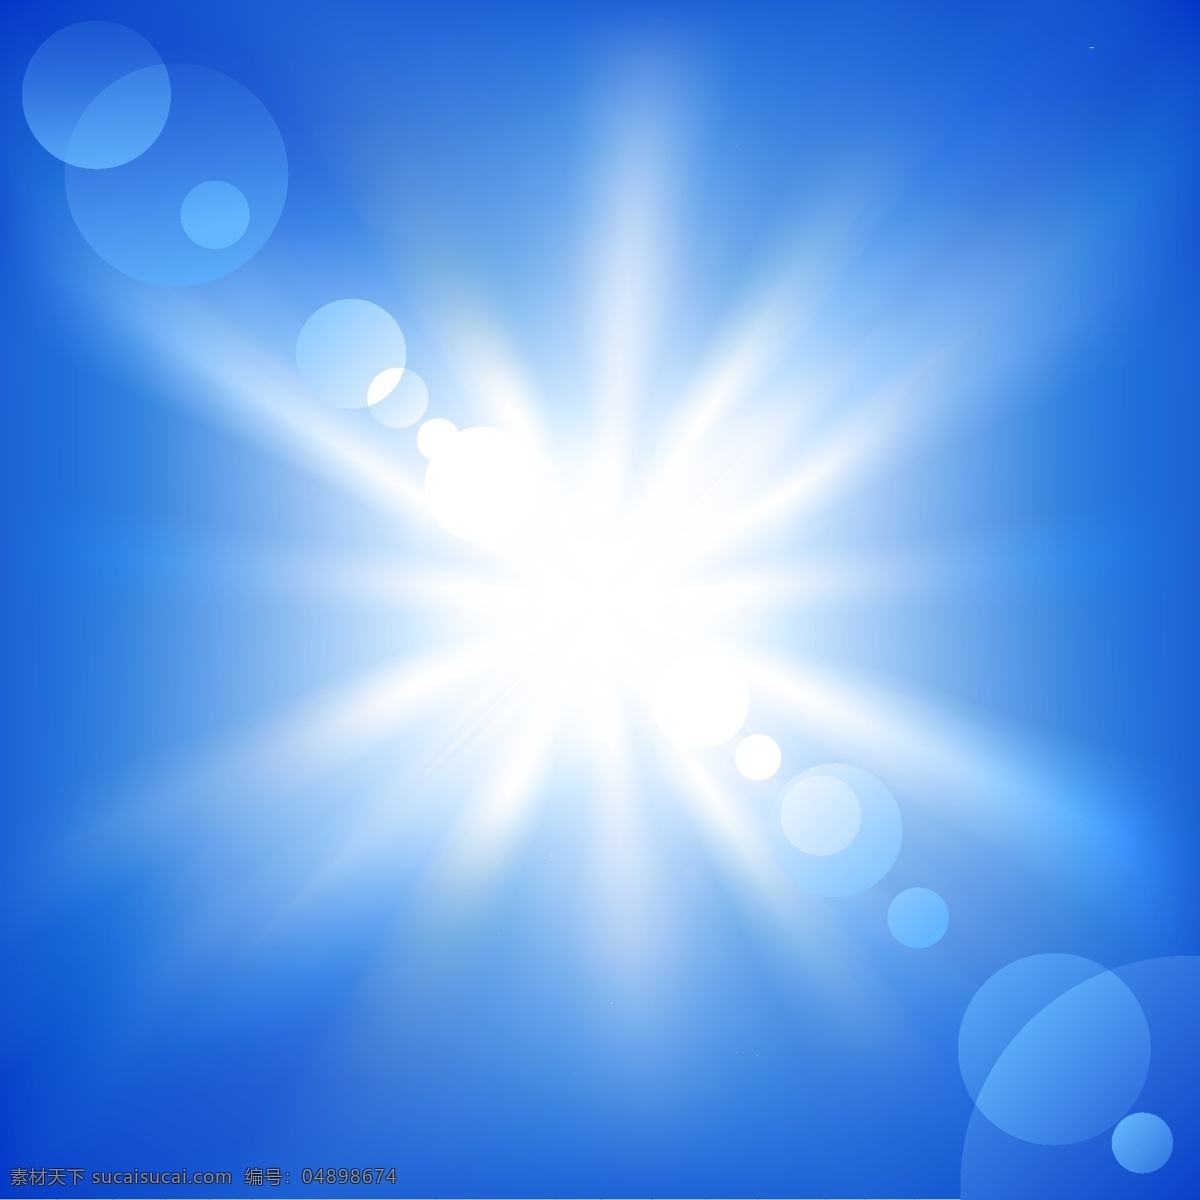 蓝天 阳光 照射 光线 效果 背景 矢量 光线背景 蓝天背景 阳光素材 光线矢量 光线素材 阳光效果 阳光照射 蓝天素材